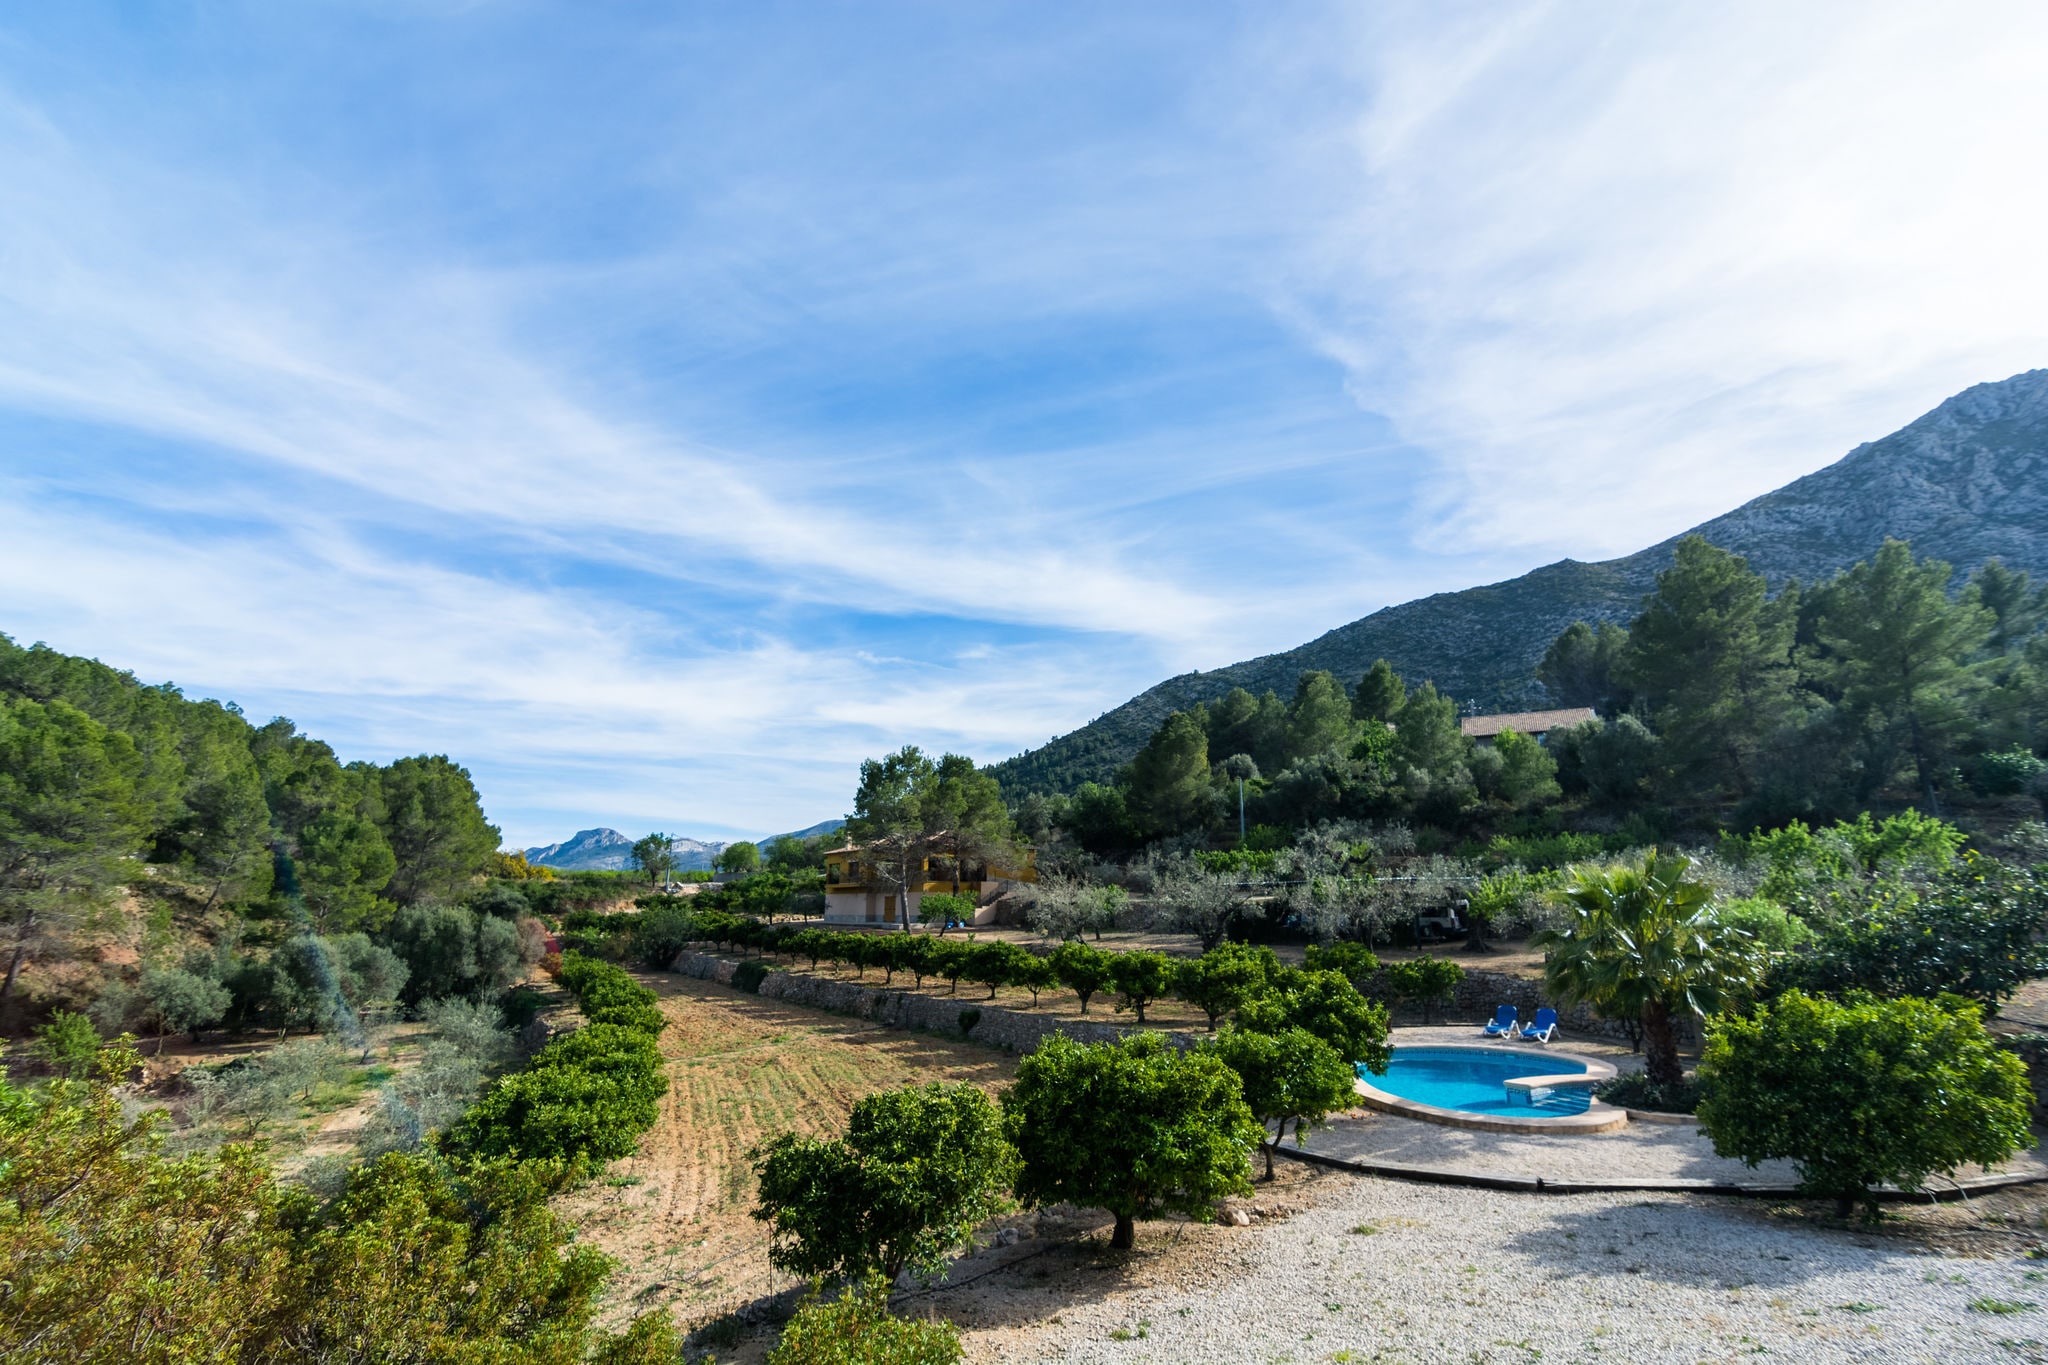 Attractive villa in Murla with private swimming pool